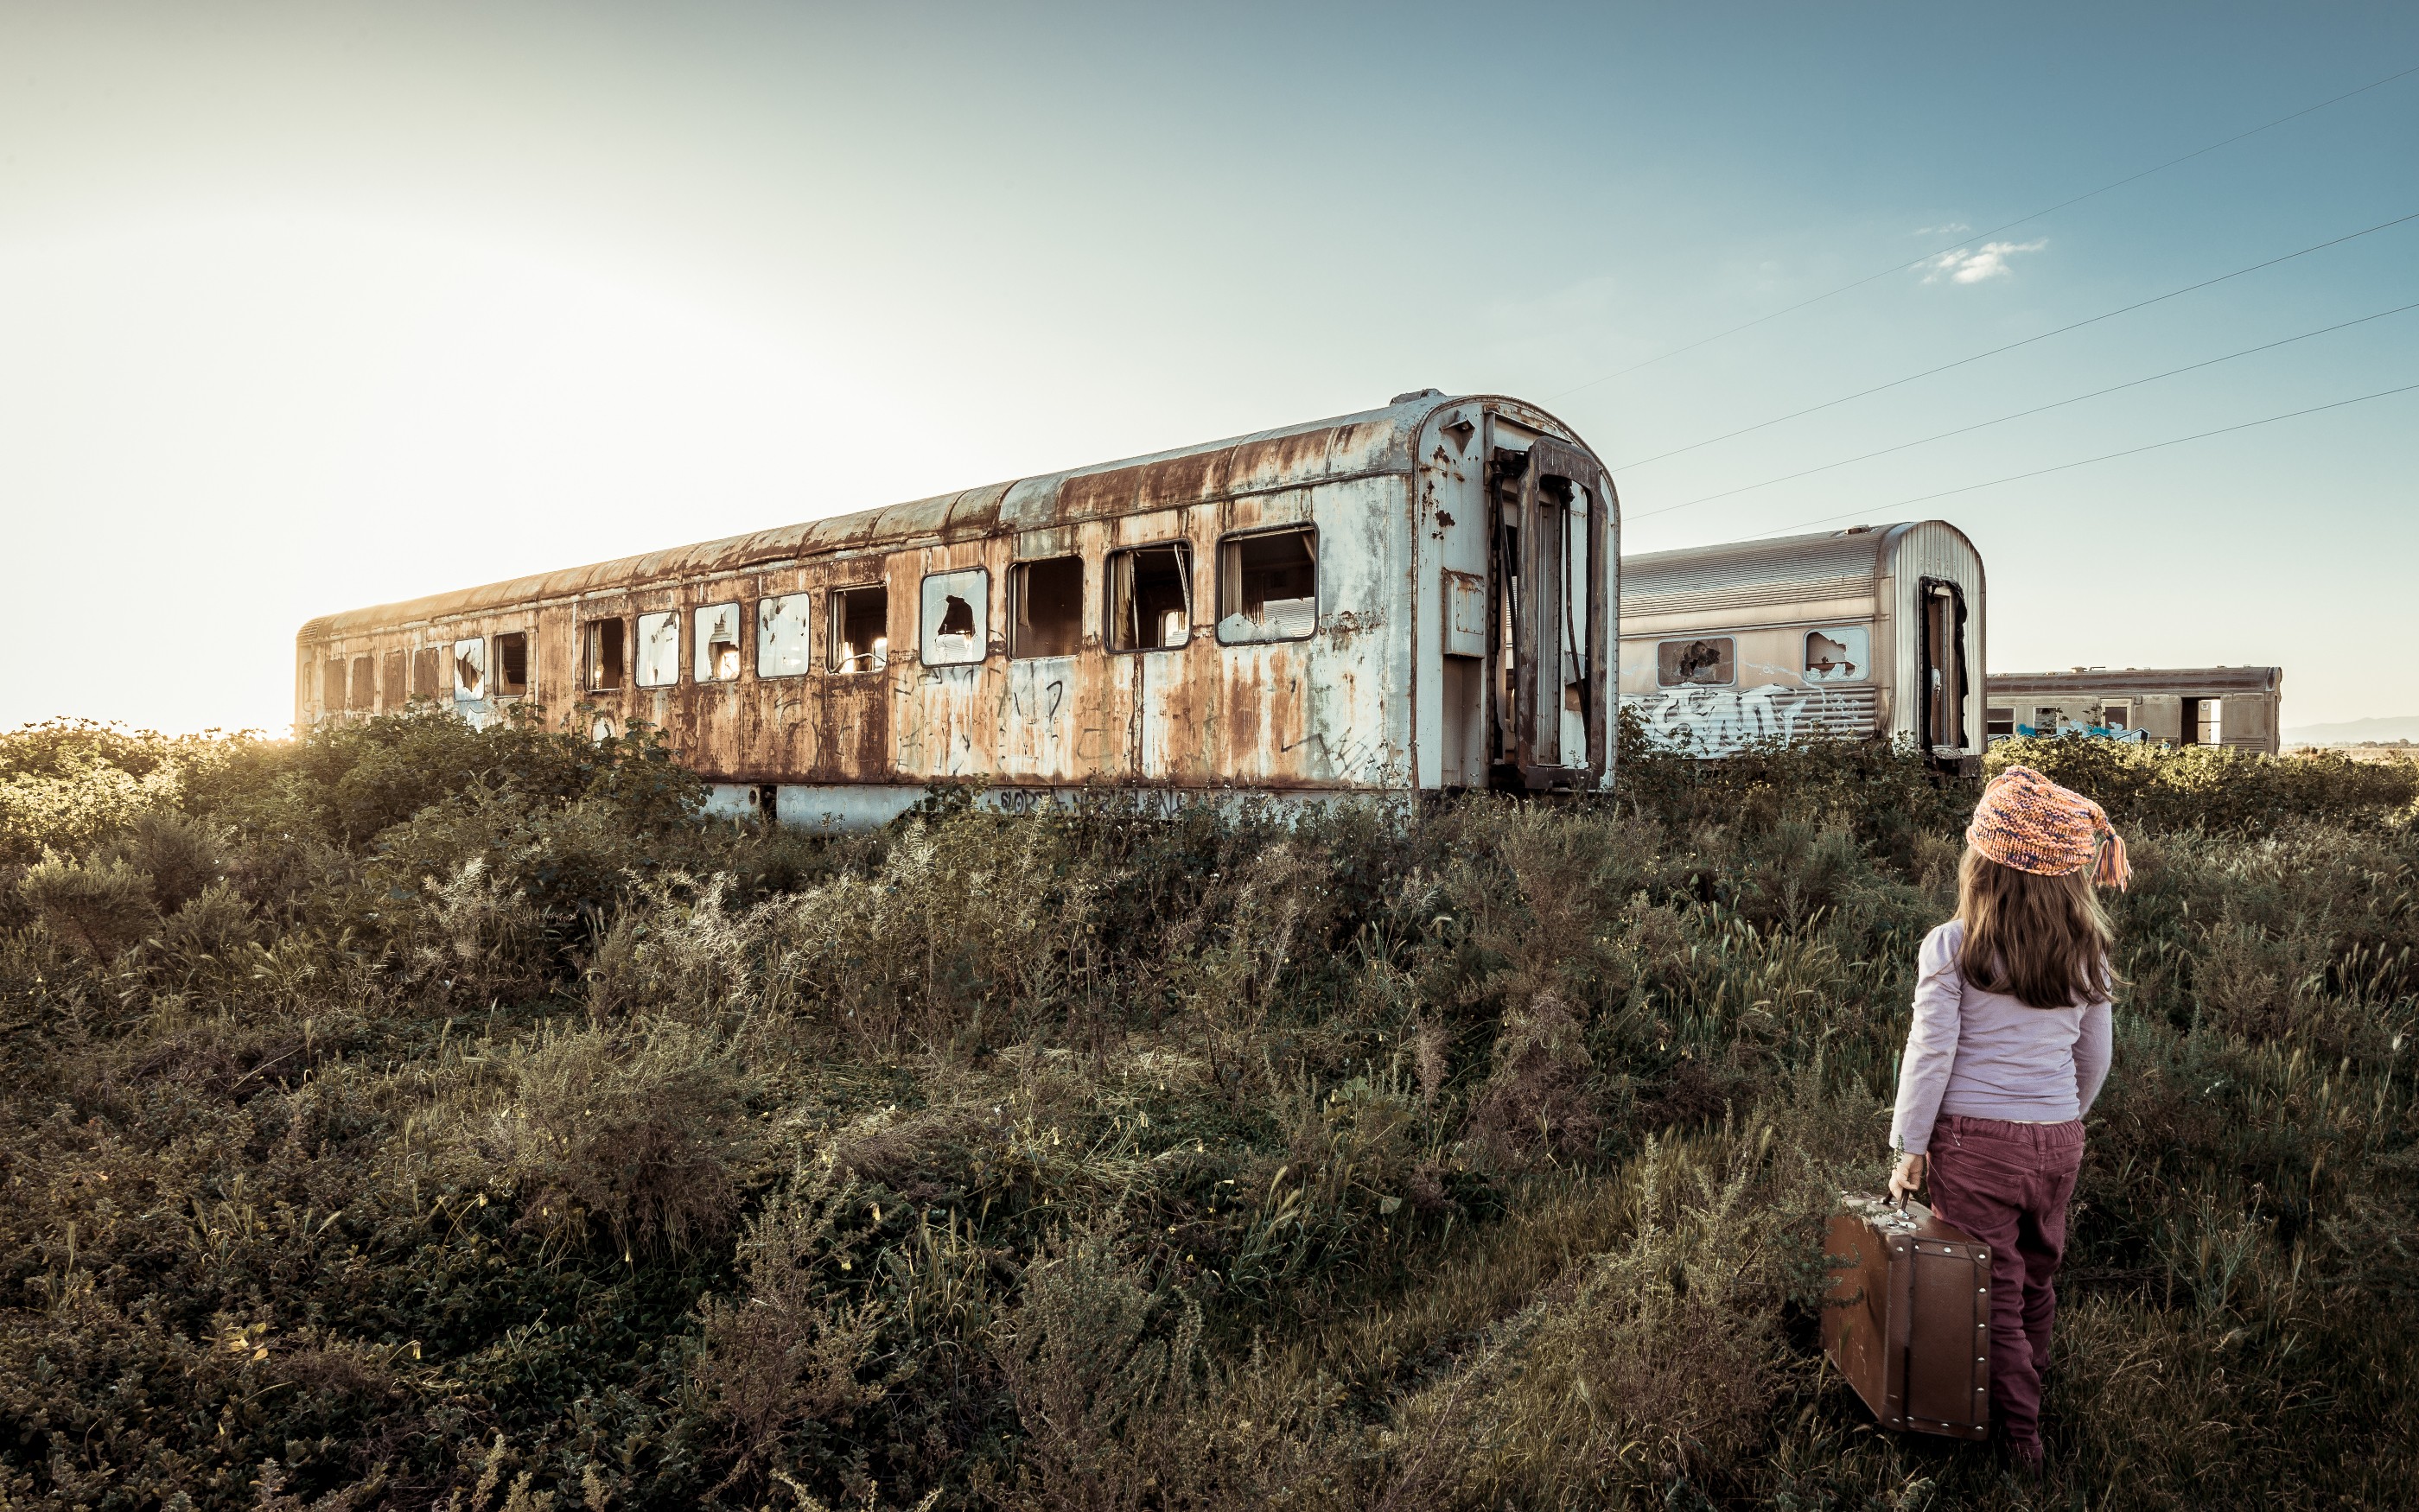 General 2799x1750 landscape wreck abandoned vehicle children suitcase train plants